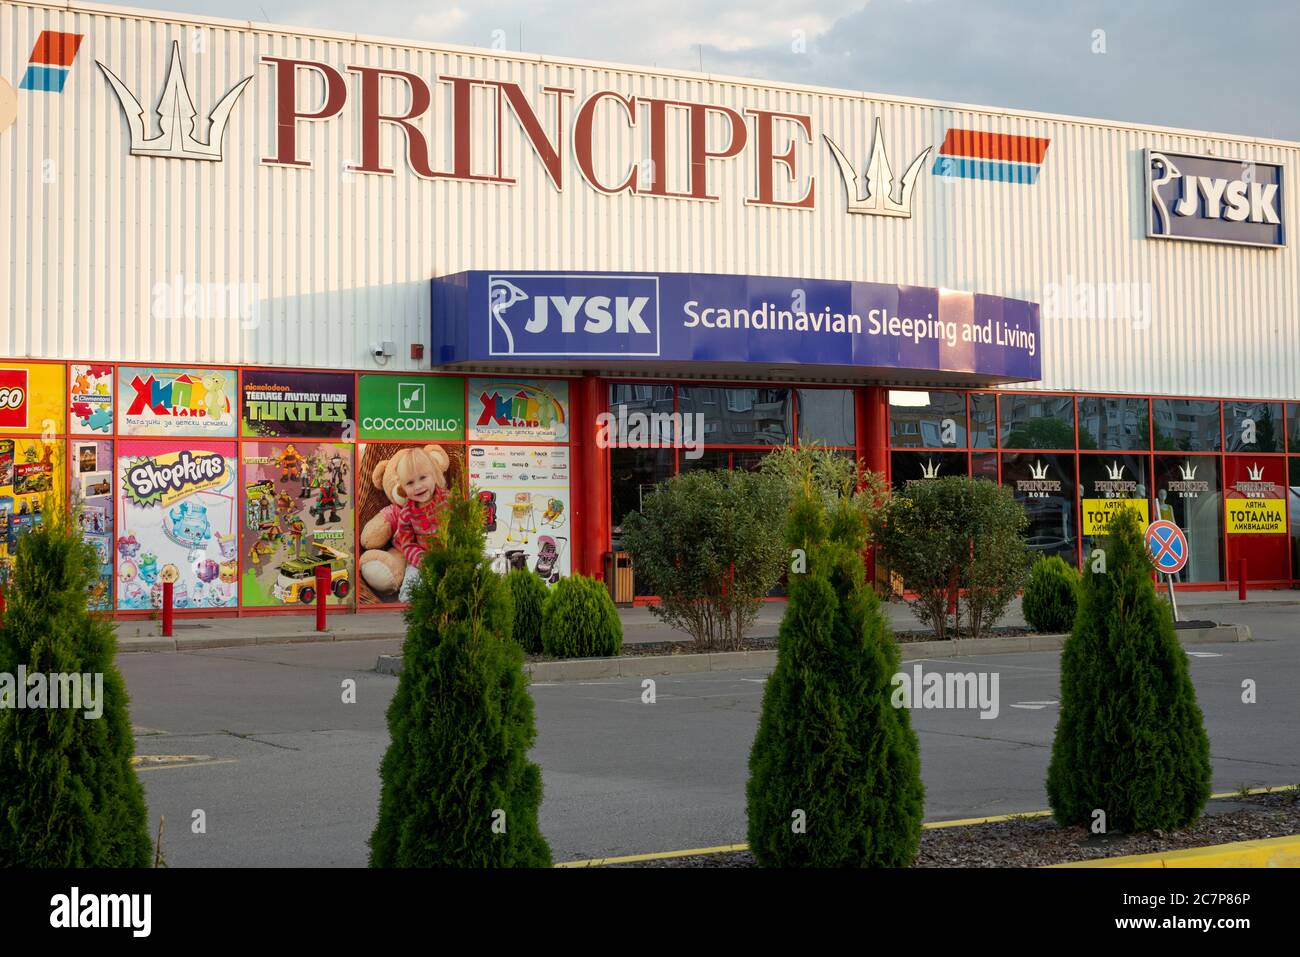 Il logo Principe e Jysk Scandinavo Sleeping and Living arredamento negozio di arredamento facciata anteriore a Sofia Bulgaria Foto Stock